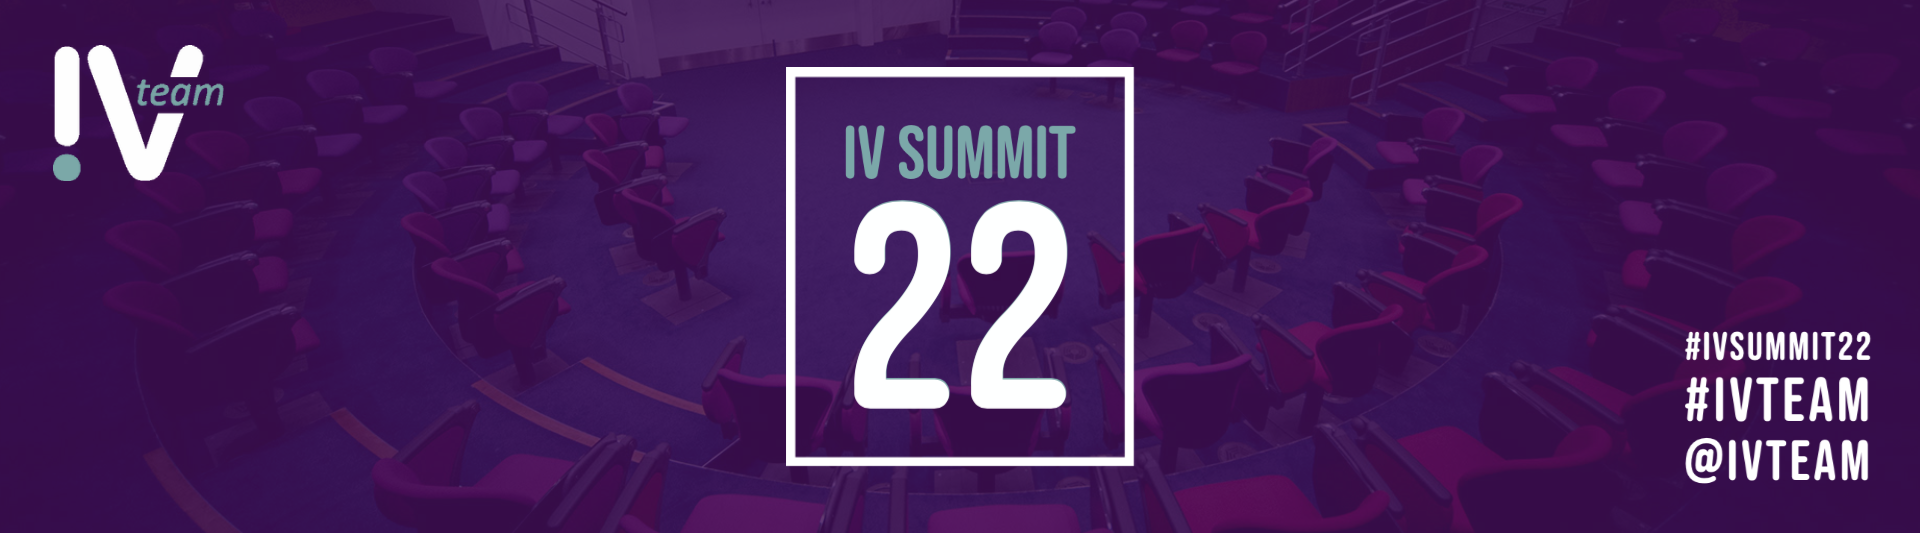 IV Summit